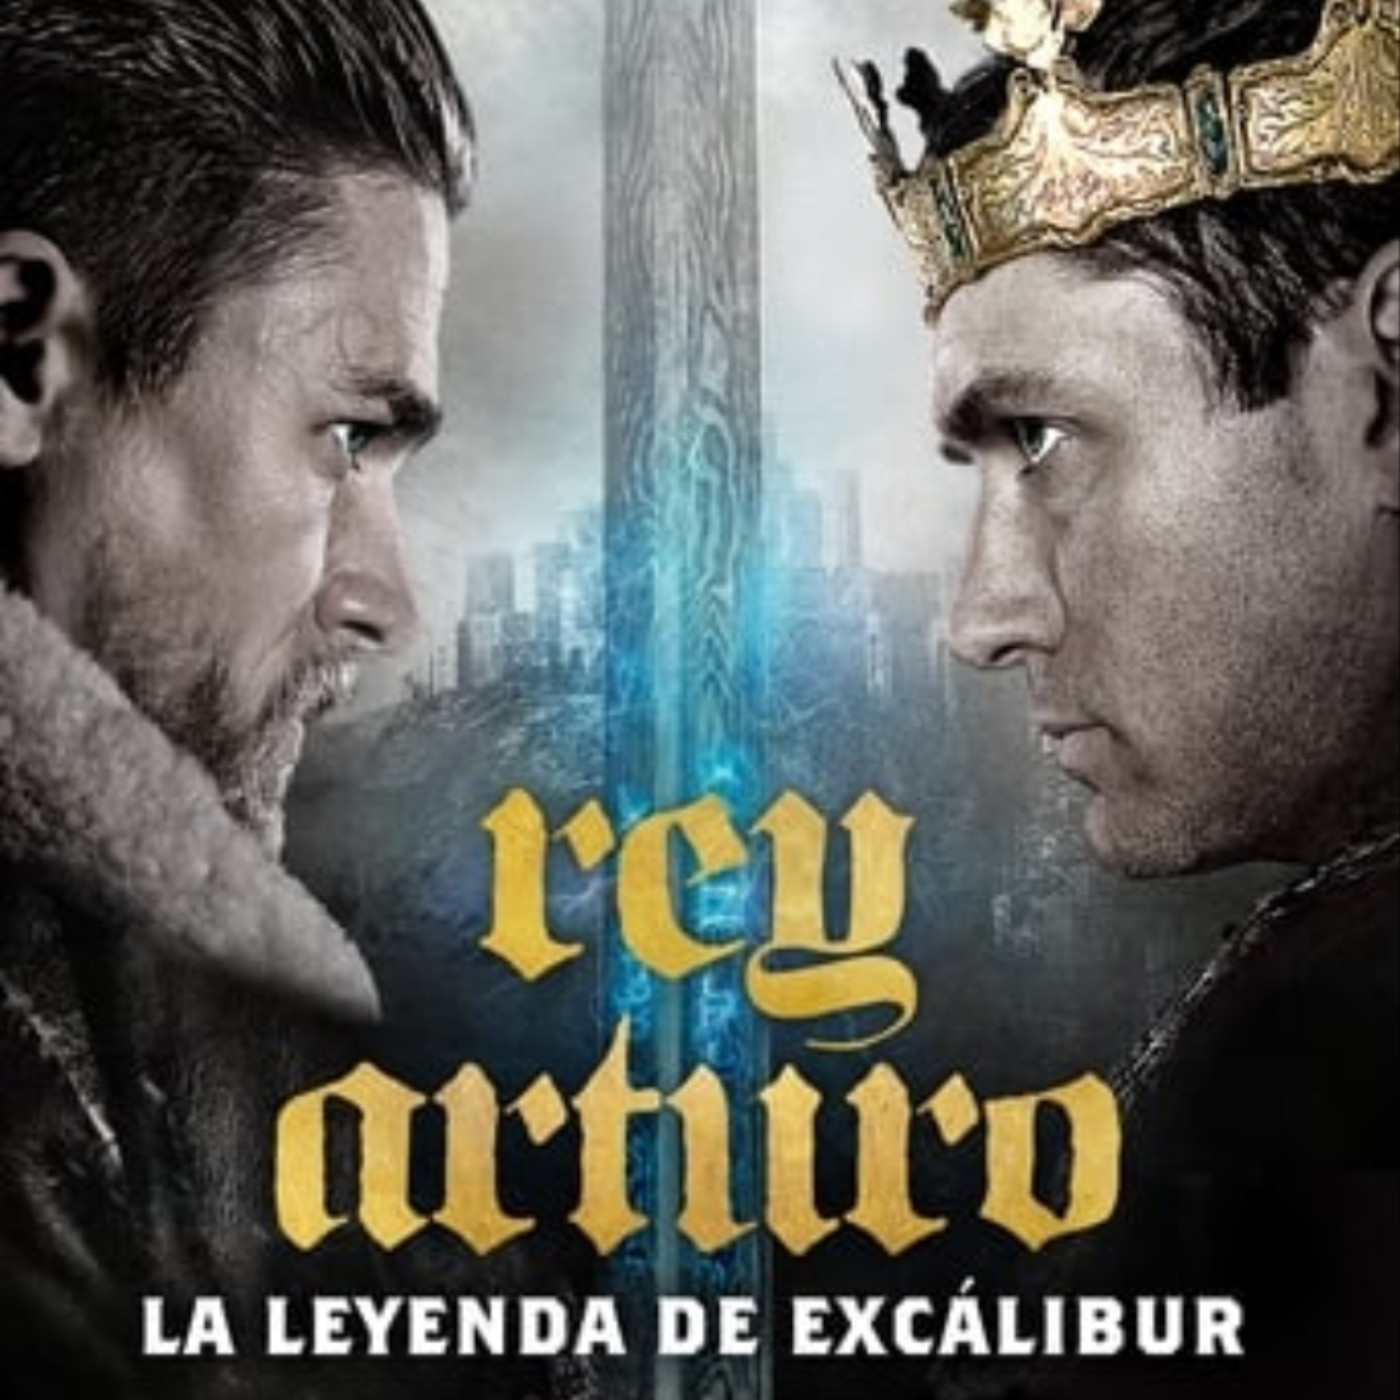 HDQ] Rey Arturo: la leyenda de Excalibur pelicula completa en español  gratis Gnula | Podcast on SoundOn